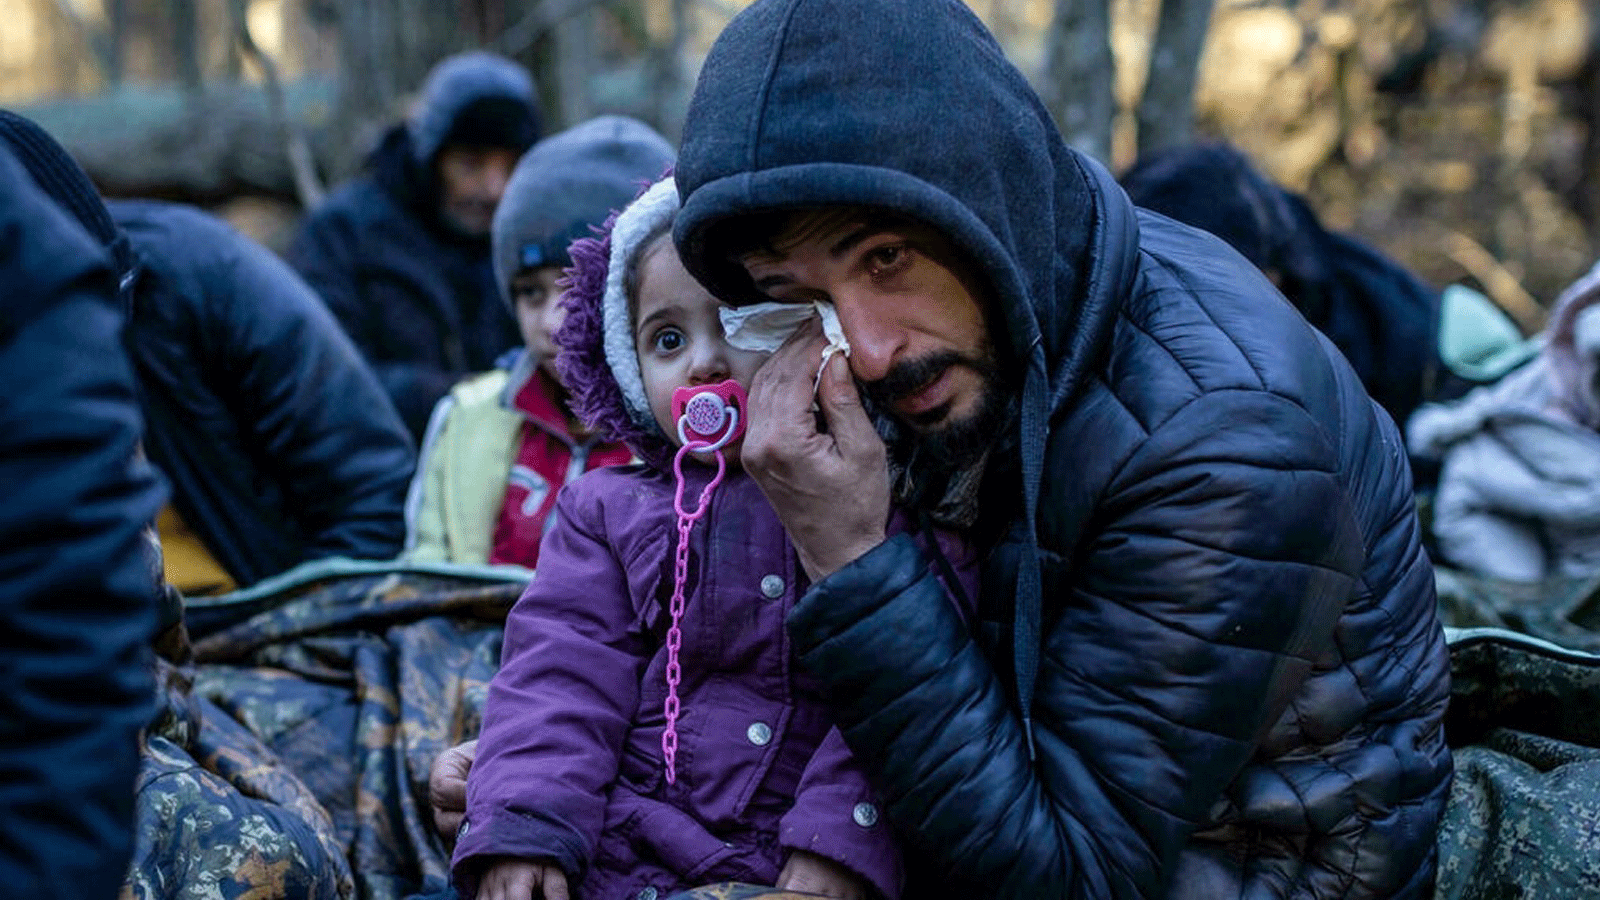 أفراد من عائلة كردية ممتدة من دهوك، العراق شوهدوا بالقرب من ناروكا، بولندا في 9 تشرين الثاني/ نوفمبر 2021. قالوا إنهم أمضوا حوالي 20 يومًا في الغابة وتم إعادتهم عدة مرات إلى بيلاروسيا